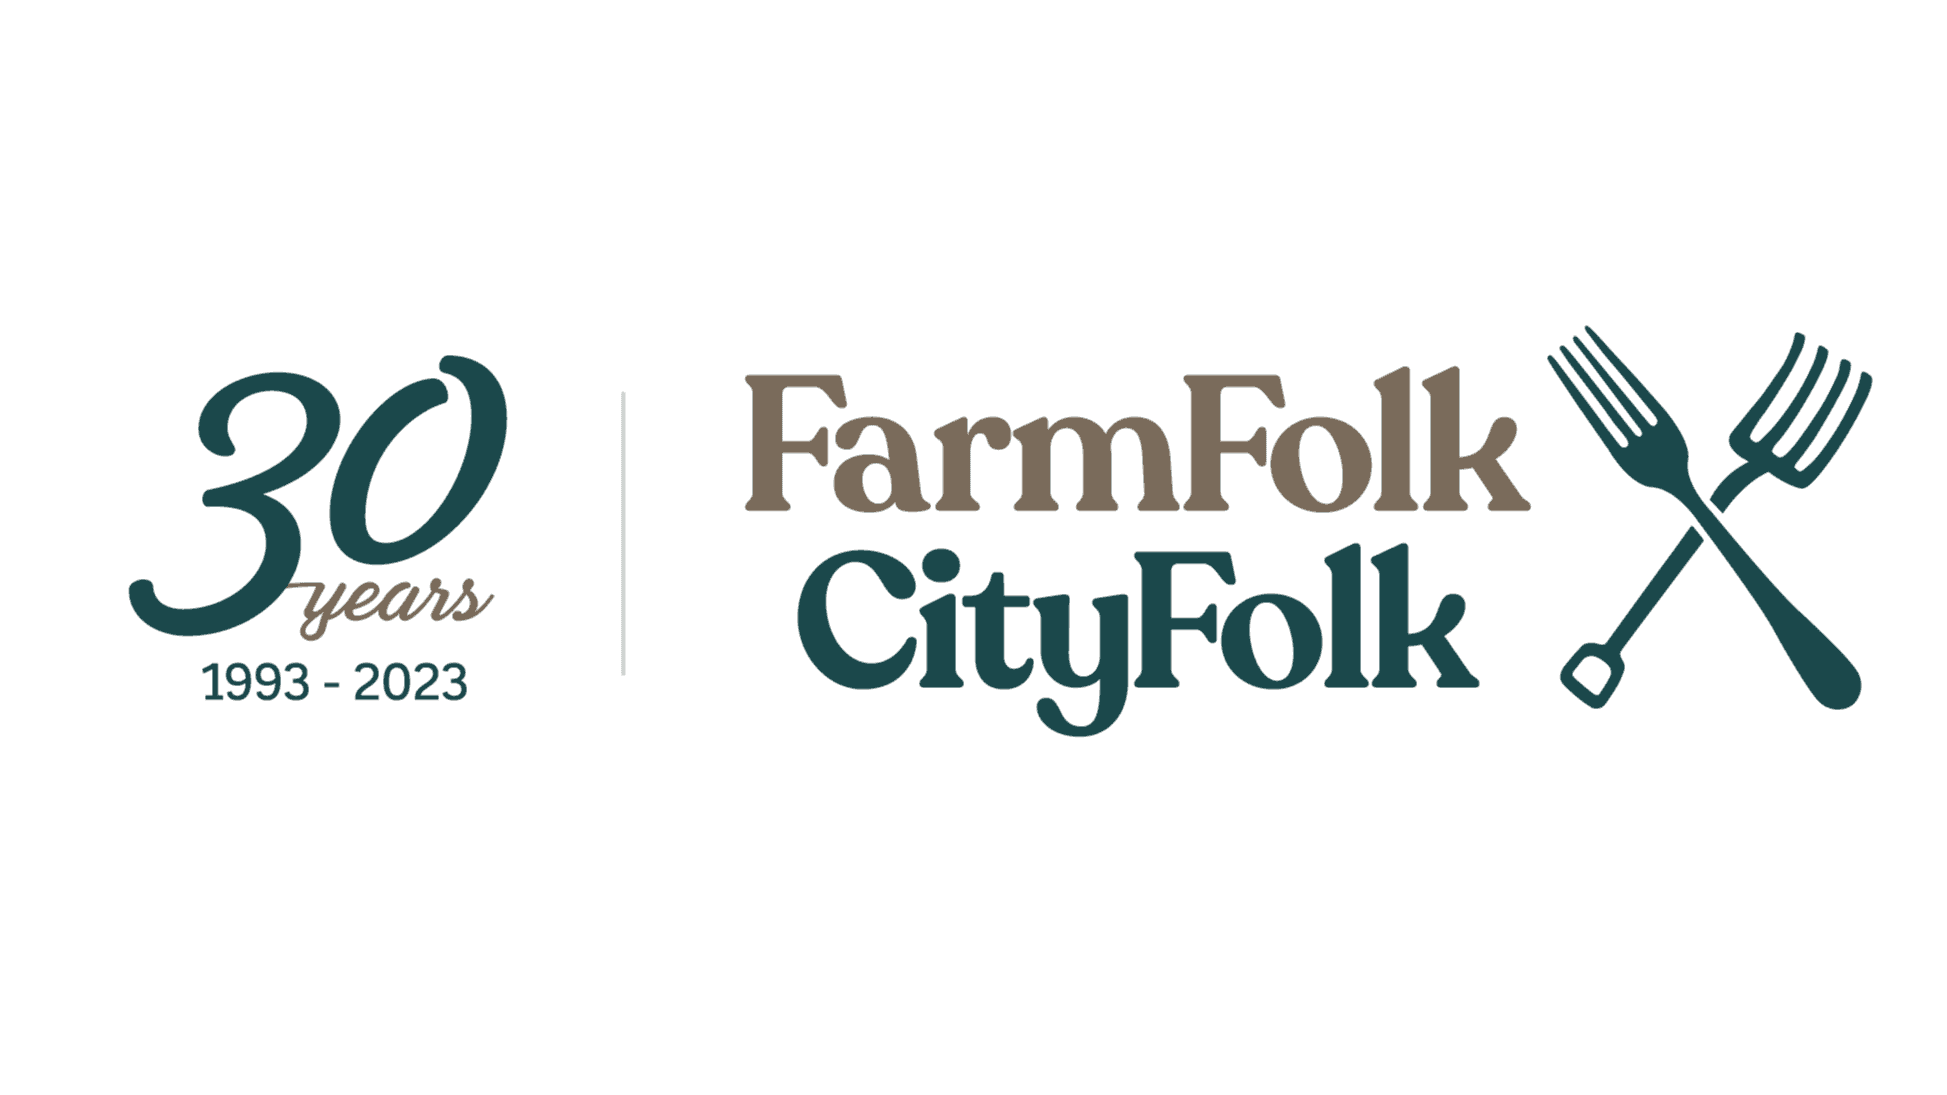 FarmFolk CityFolk logo